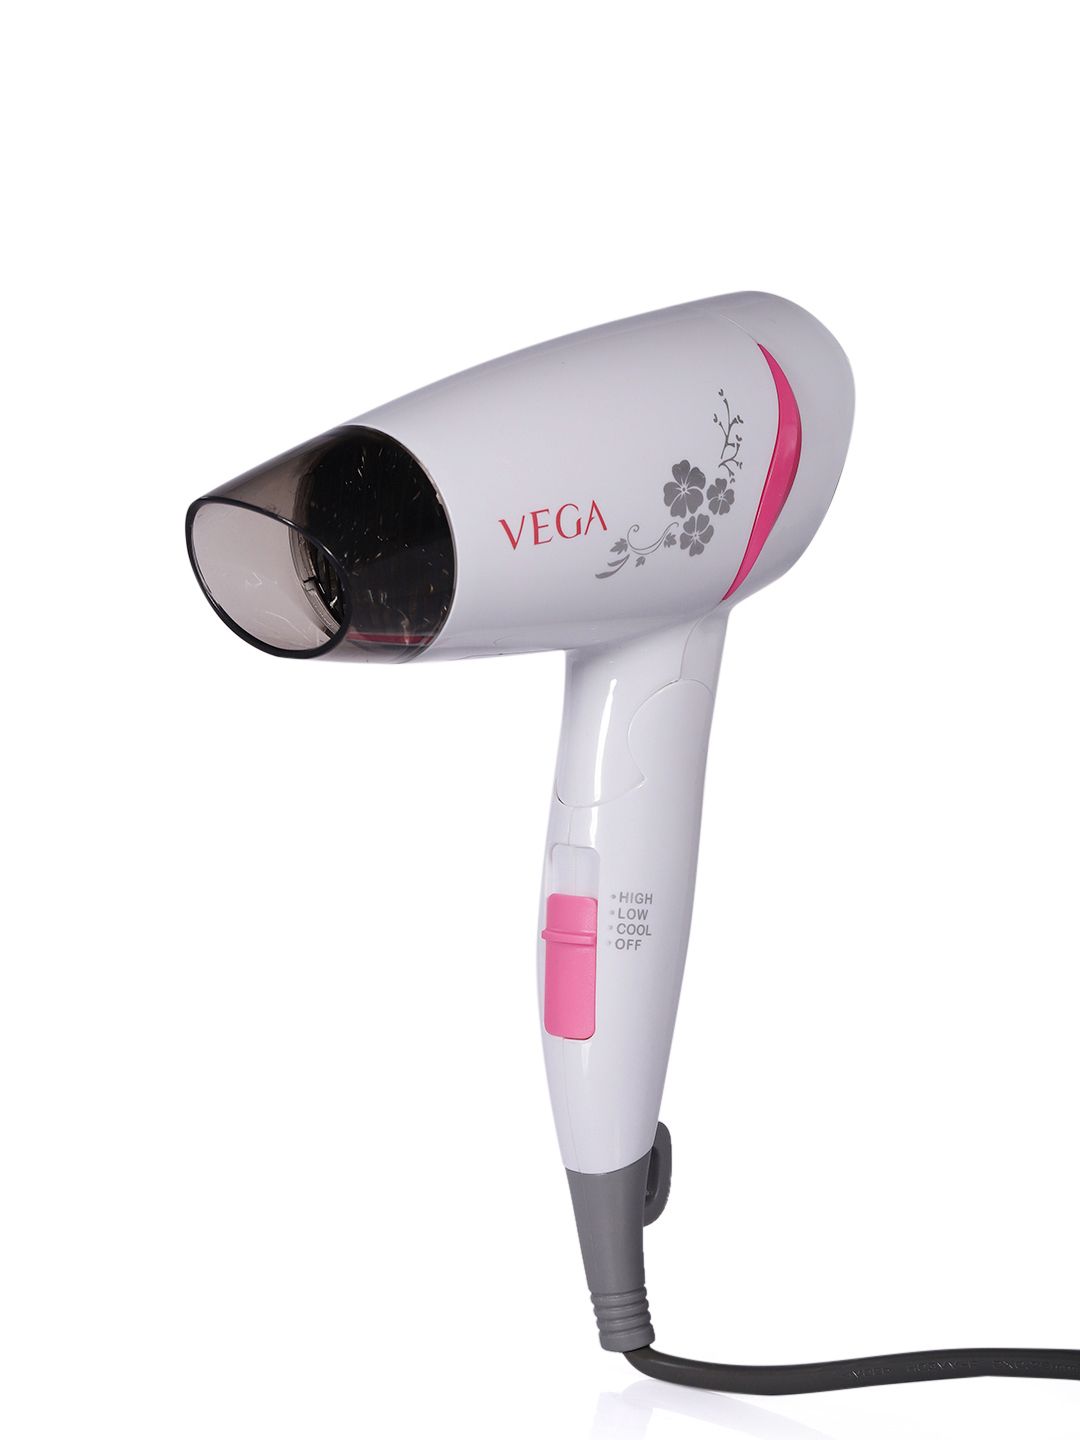 VEGA Unisex VHDH-18 Go-Style 1200 Hair Dryer - White & Pink Price in India